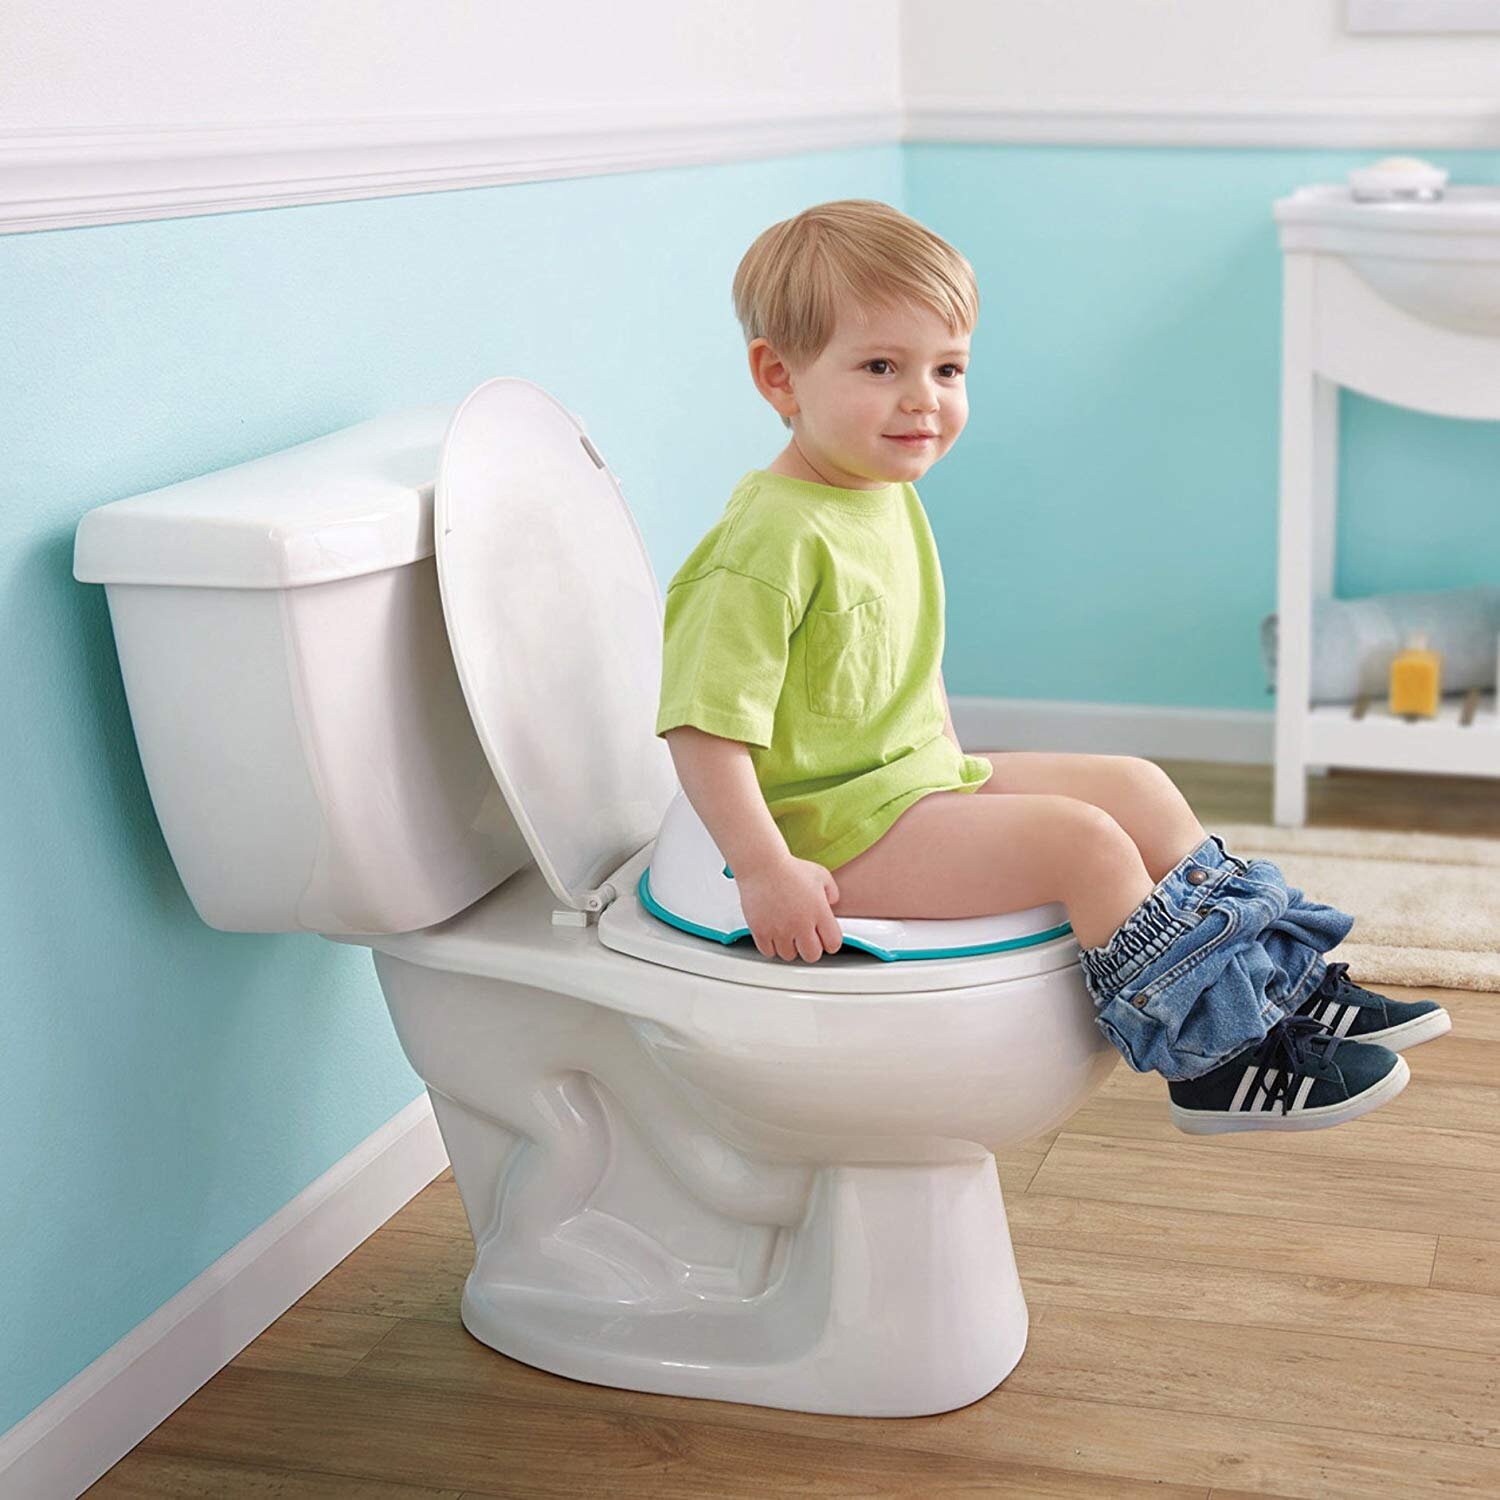 Trên thị trường có khá nhiều mẫu bô vệ sinh phù hợp với bé